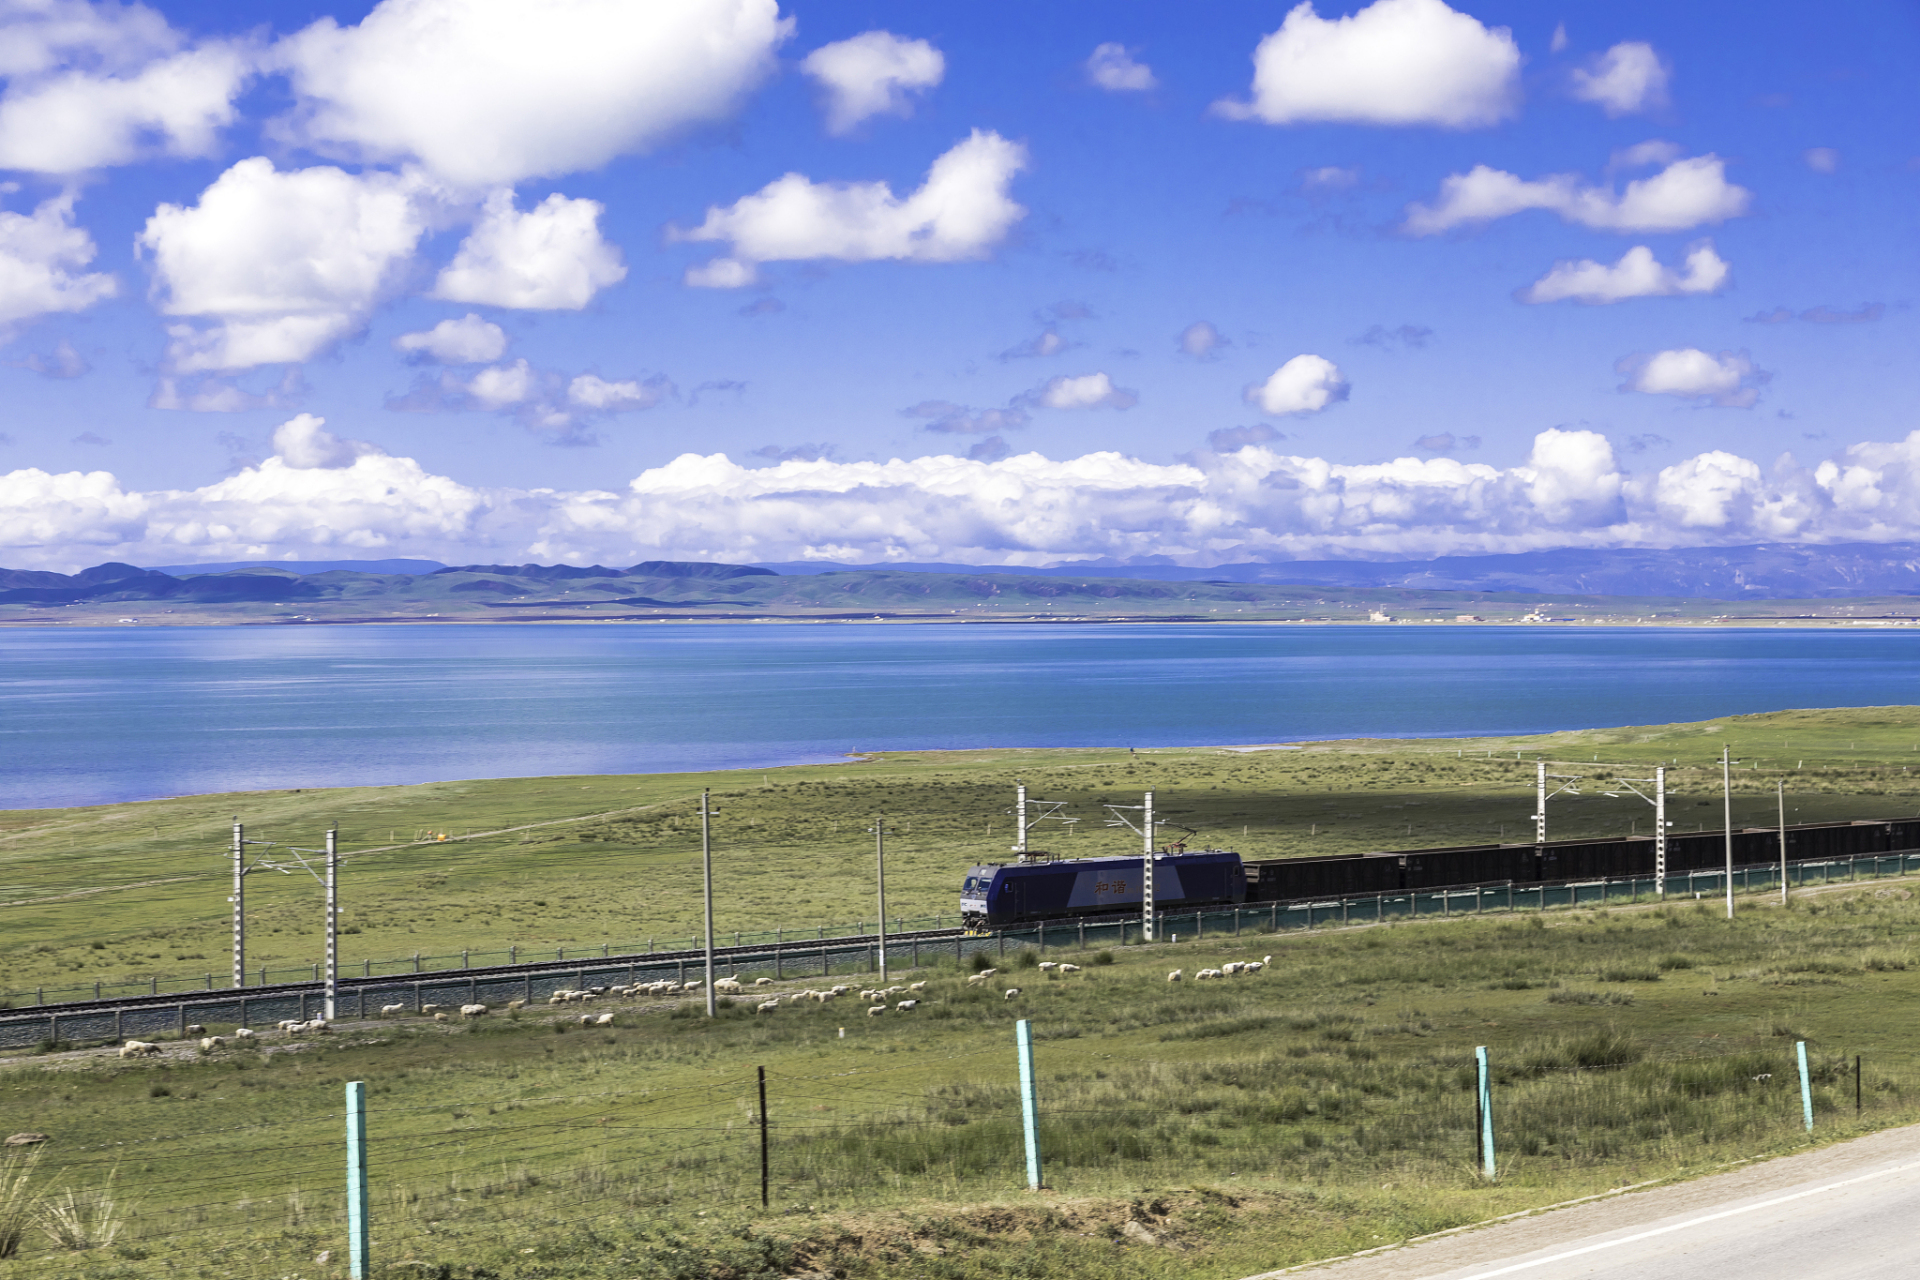 青藏铁路:连接青海和西藏的高原铁路,被誉为世界上最高的铁路线路